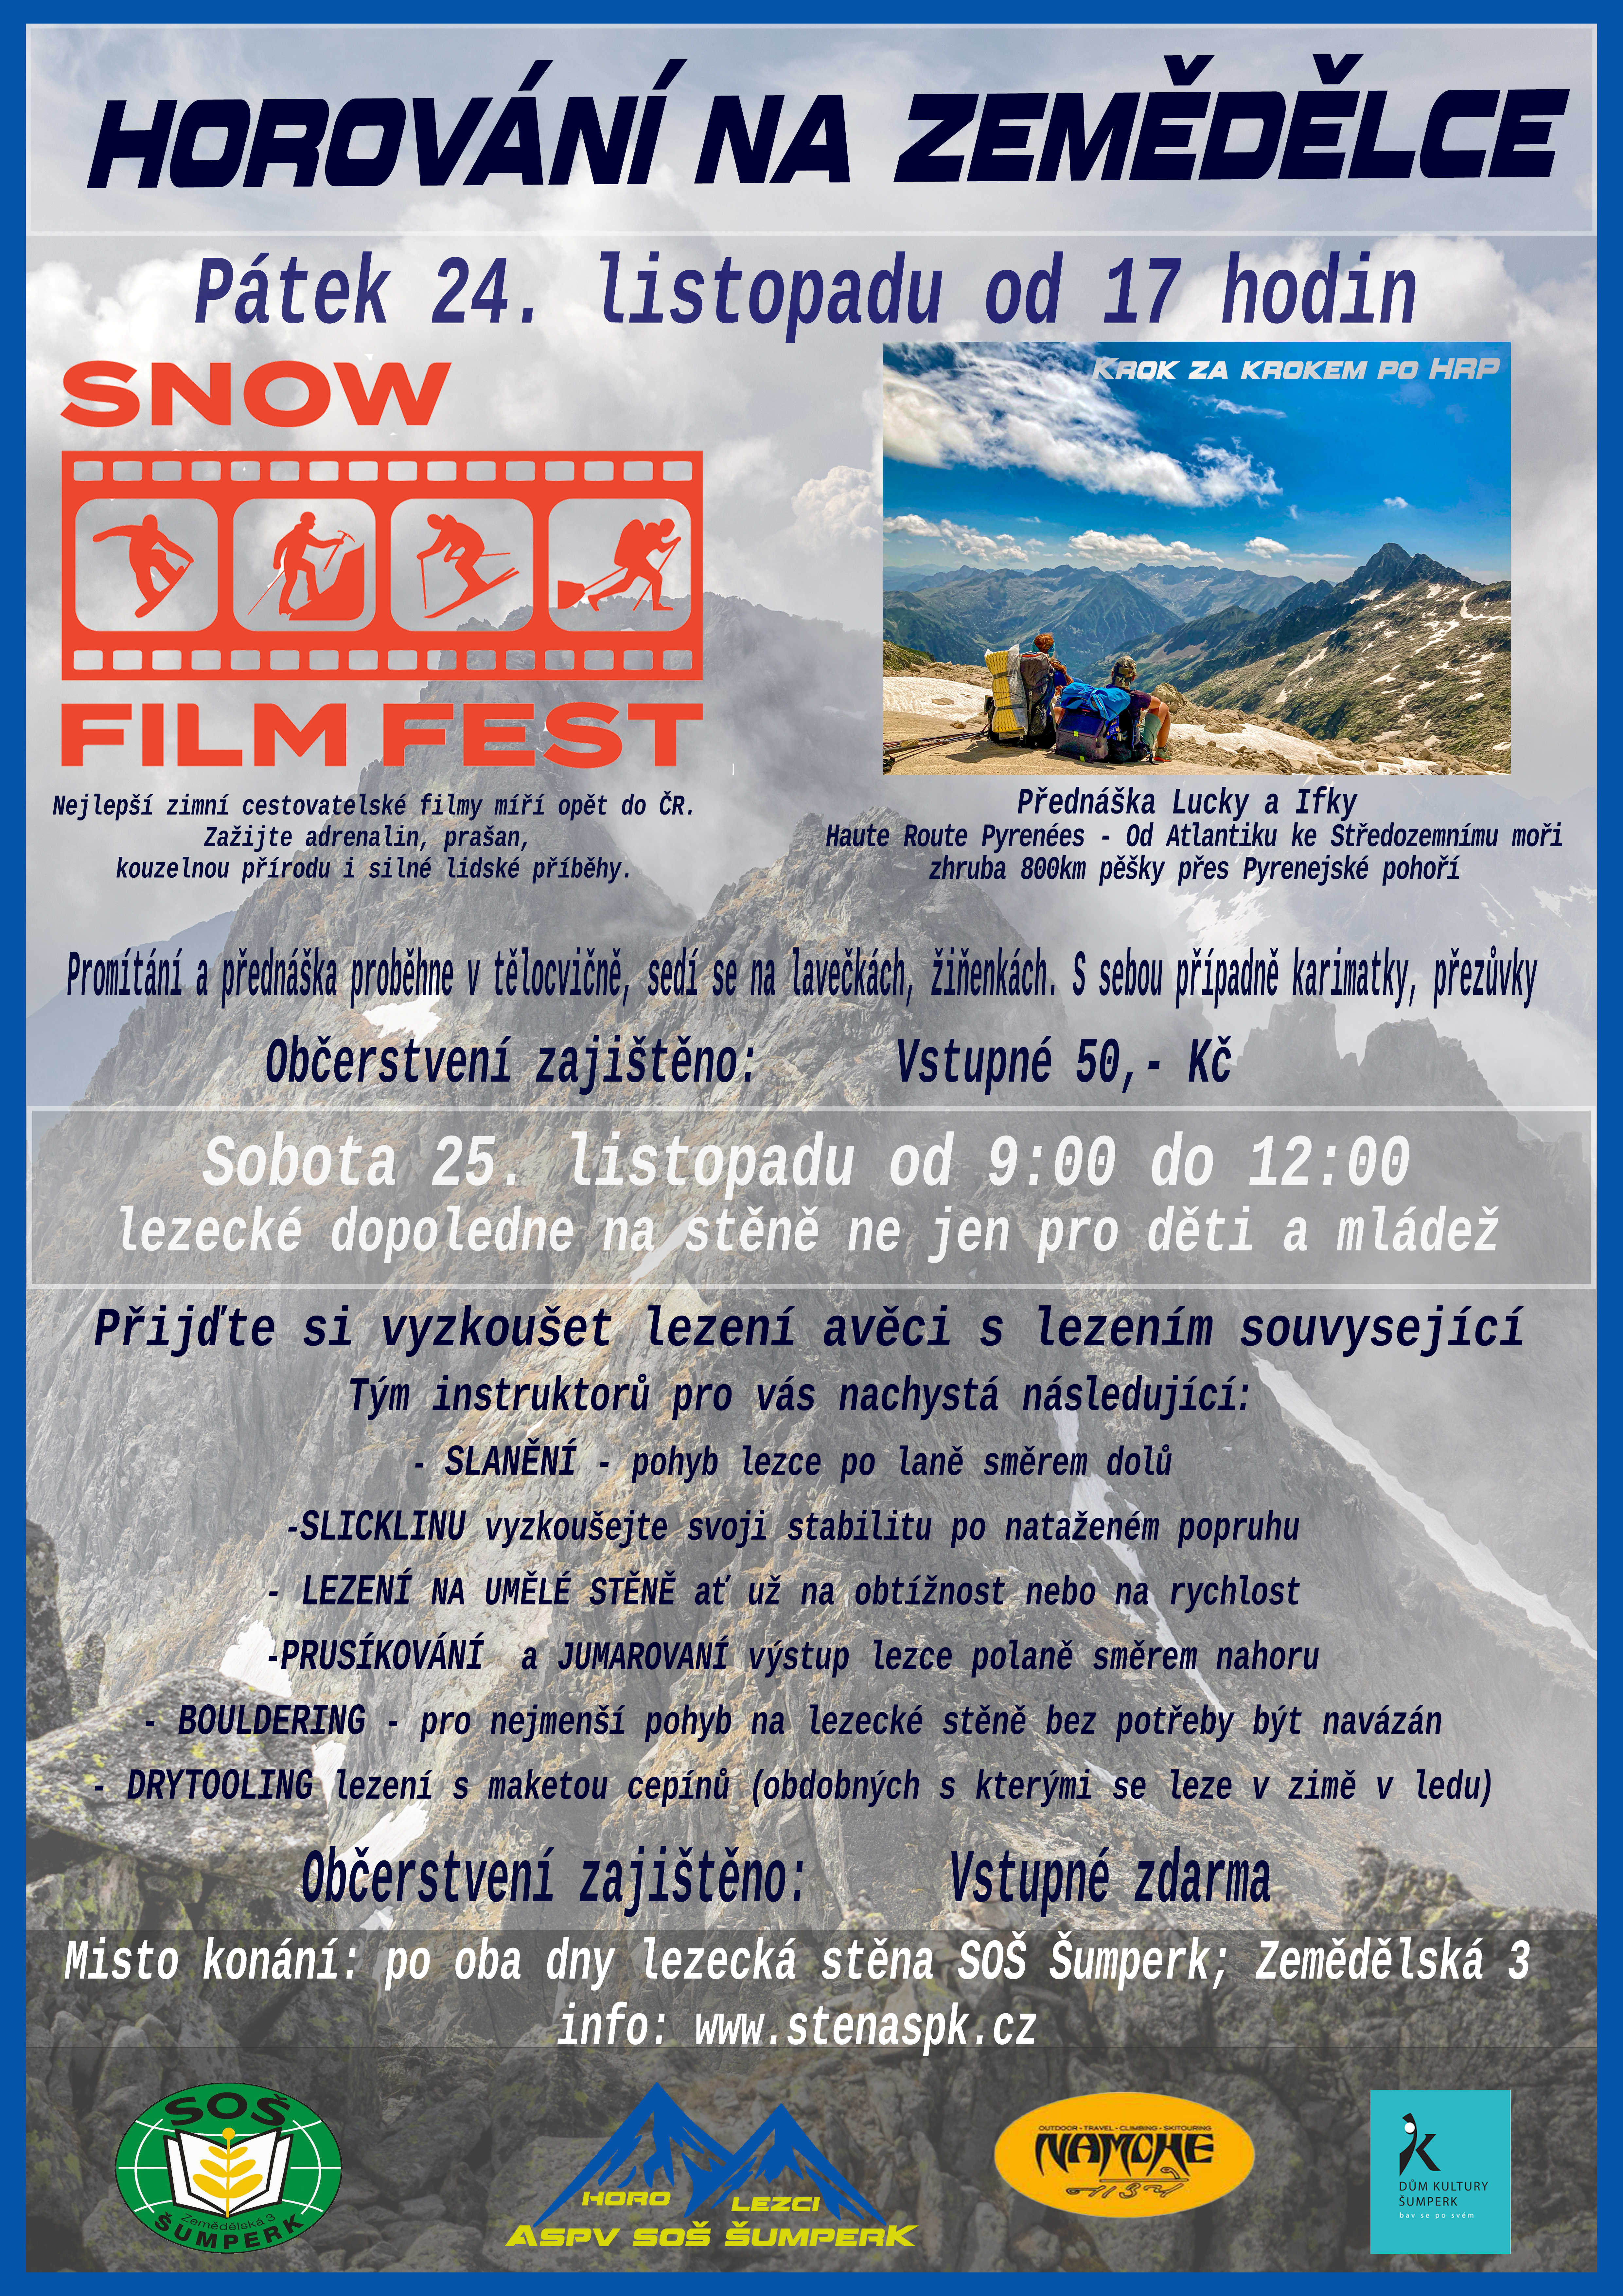 HOROVÁNÍ: SNOW FILM FEST